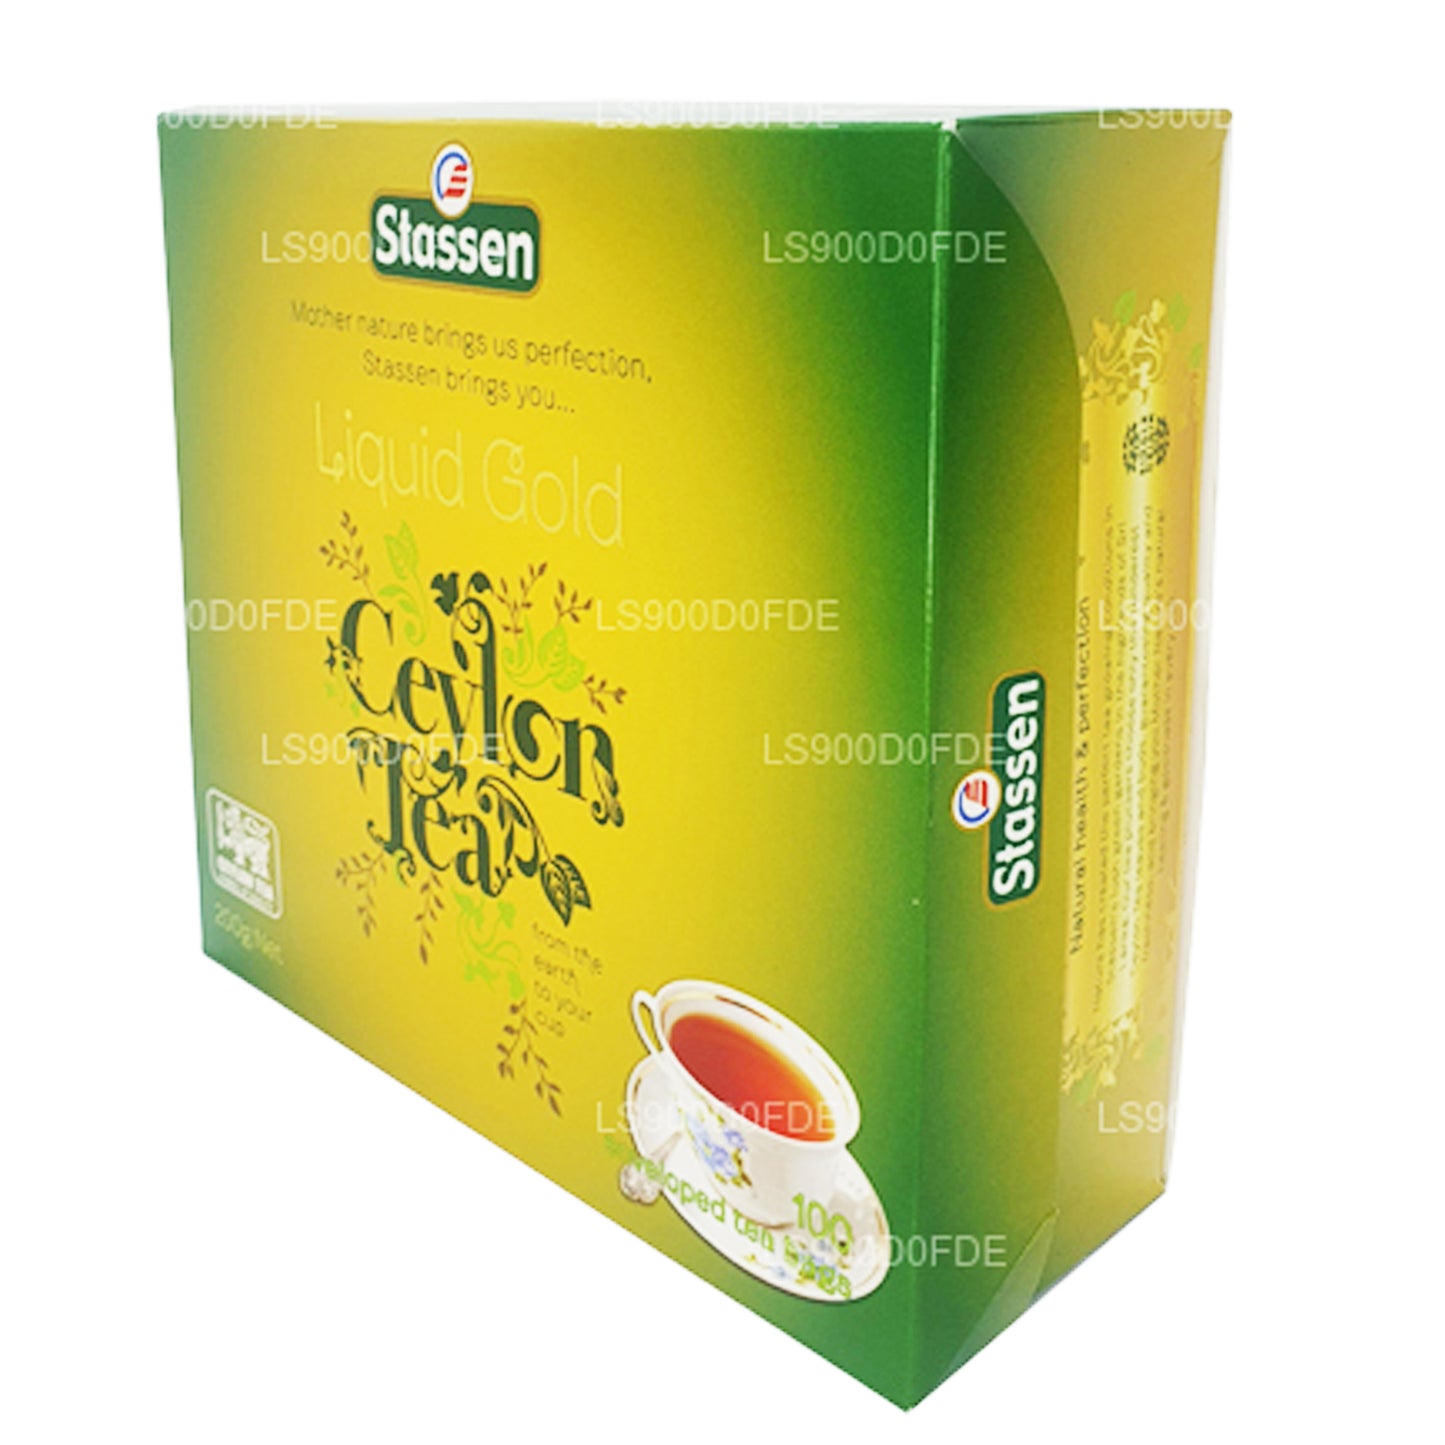 Stassen vloeibare gouden thee (200 g) 100 theezakjes